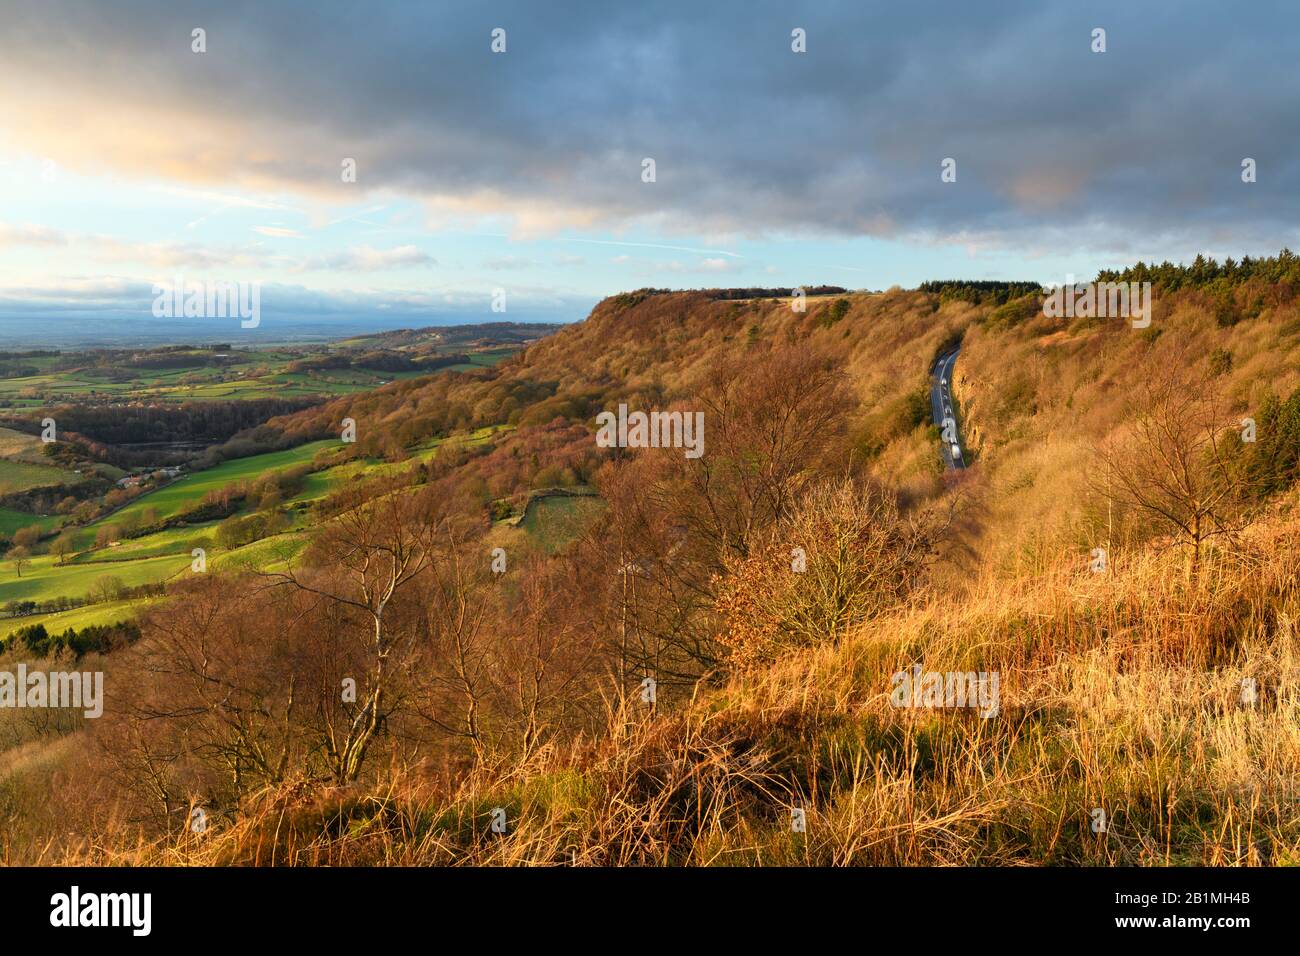 Magnifique vue panoramique sur les escarpements ensoleillées de Sutton Bank, la route escarpée, les terres agricoles et le ciel spectaculaire - La Cicatrice de Roulston, Yorkshire du Nord, Angleterre Royaume-Uni Banque D'Images